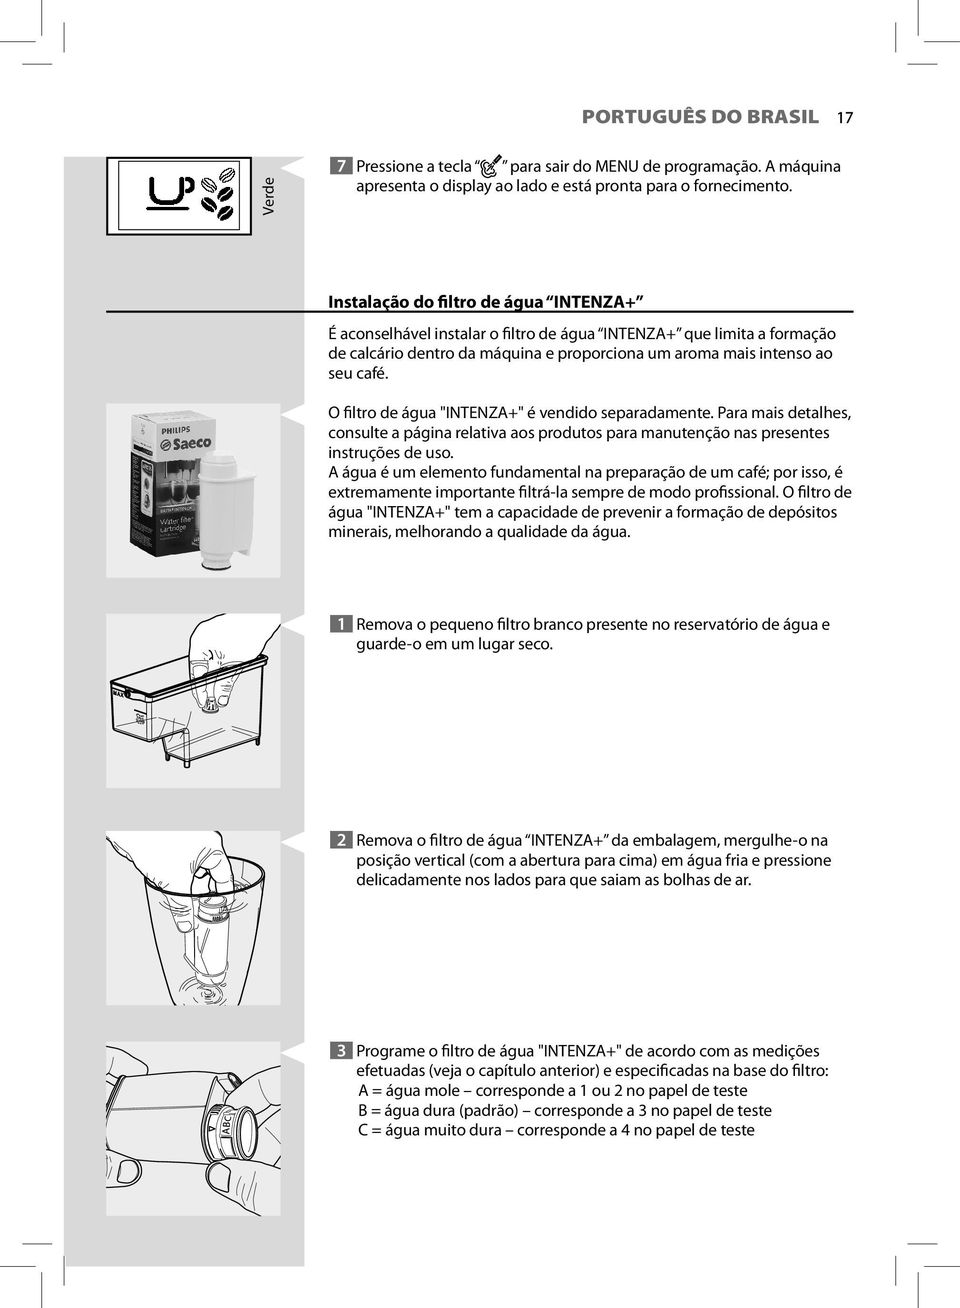 O filtro de água "INTENZA+" é vendido separadamente. Para mais detalhes, consulte a página relativa aos produtos para manutenção nas presentes instruções de uso.